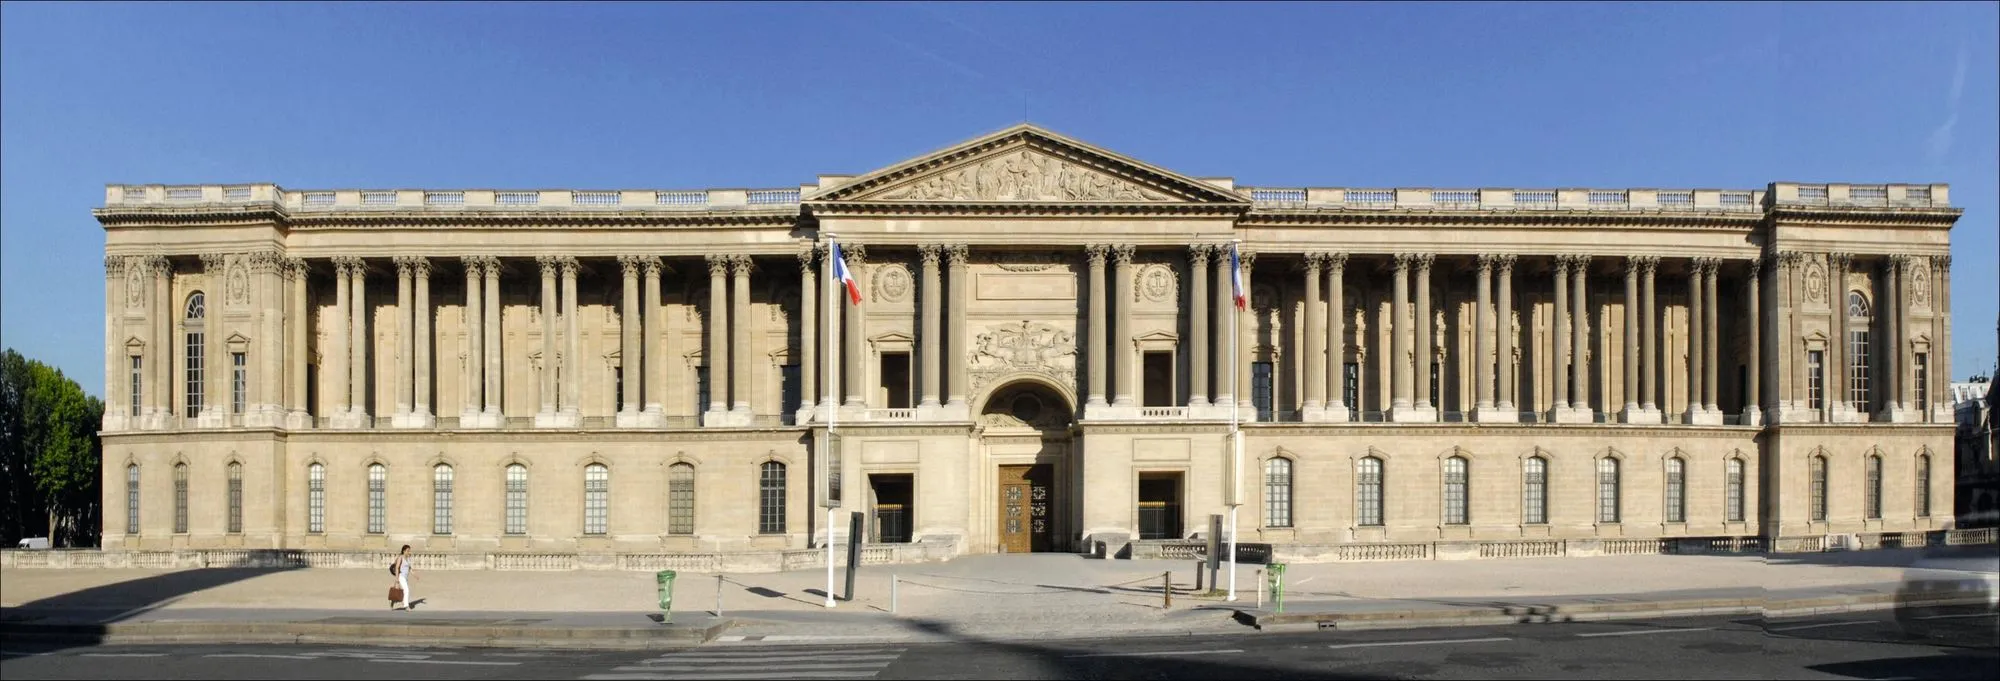 Claude Perrault, la colonnade du Louvre, édifiée entre 1667 et 1670,